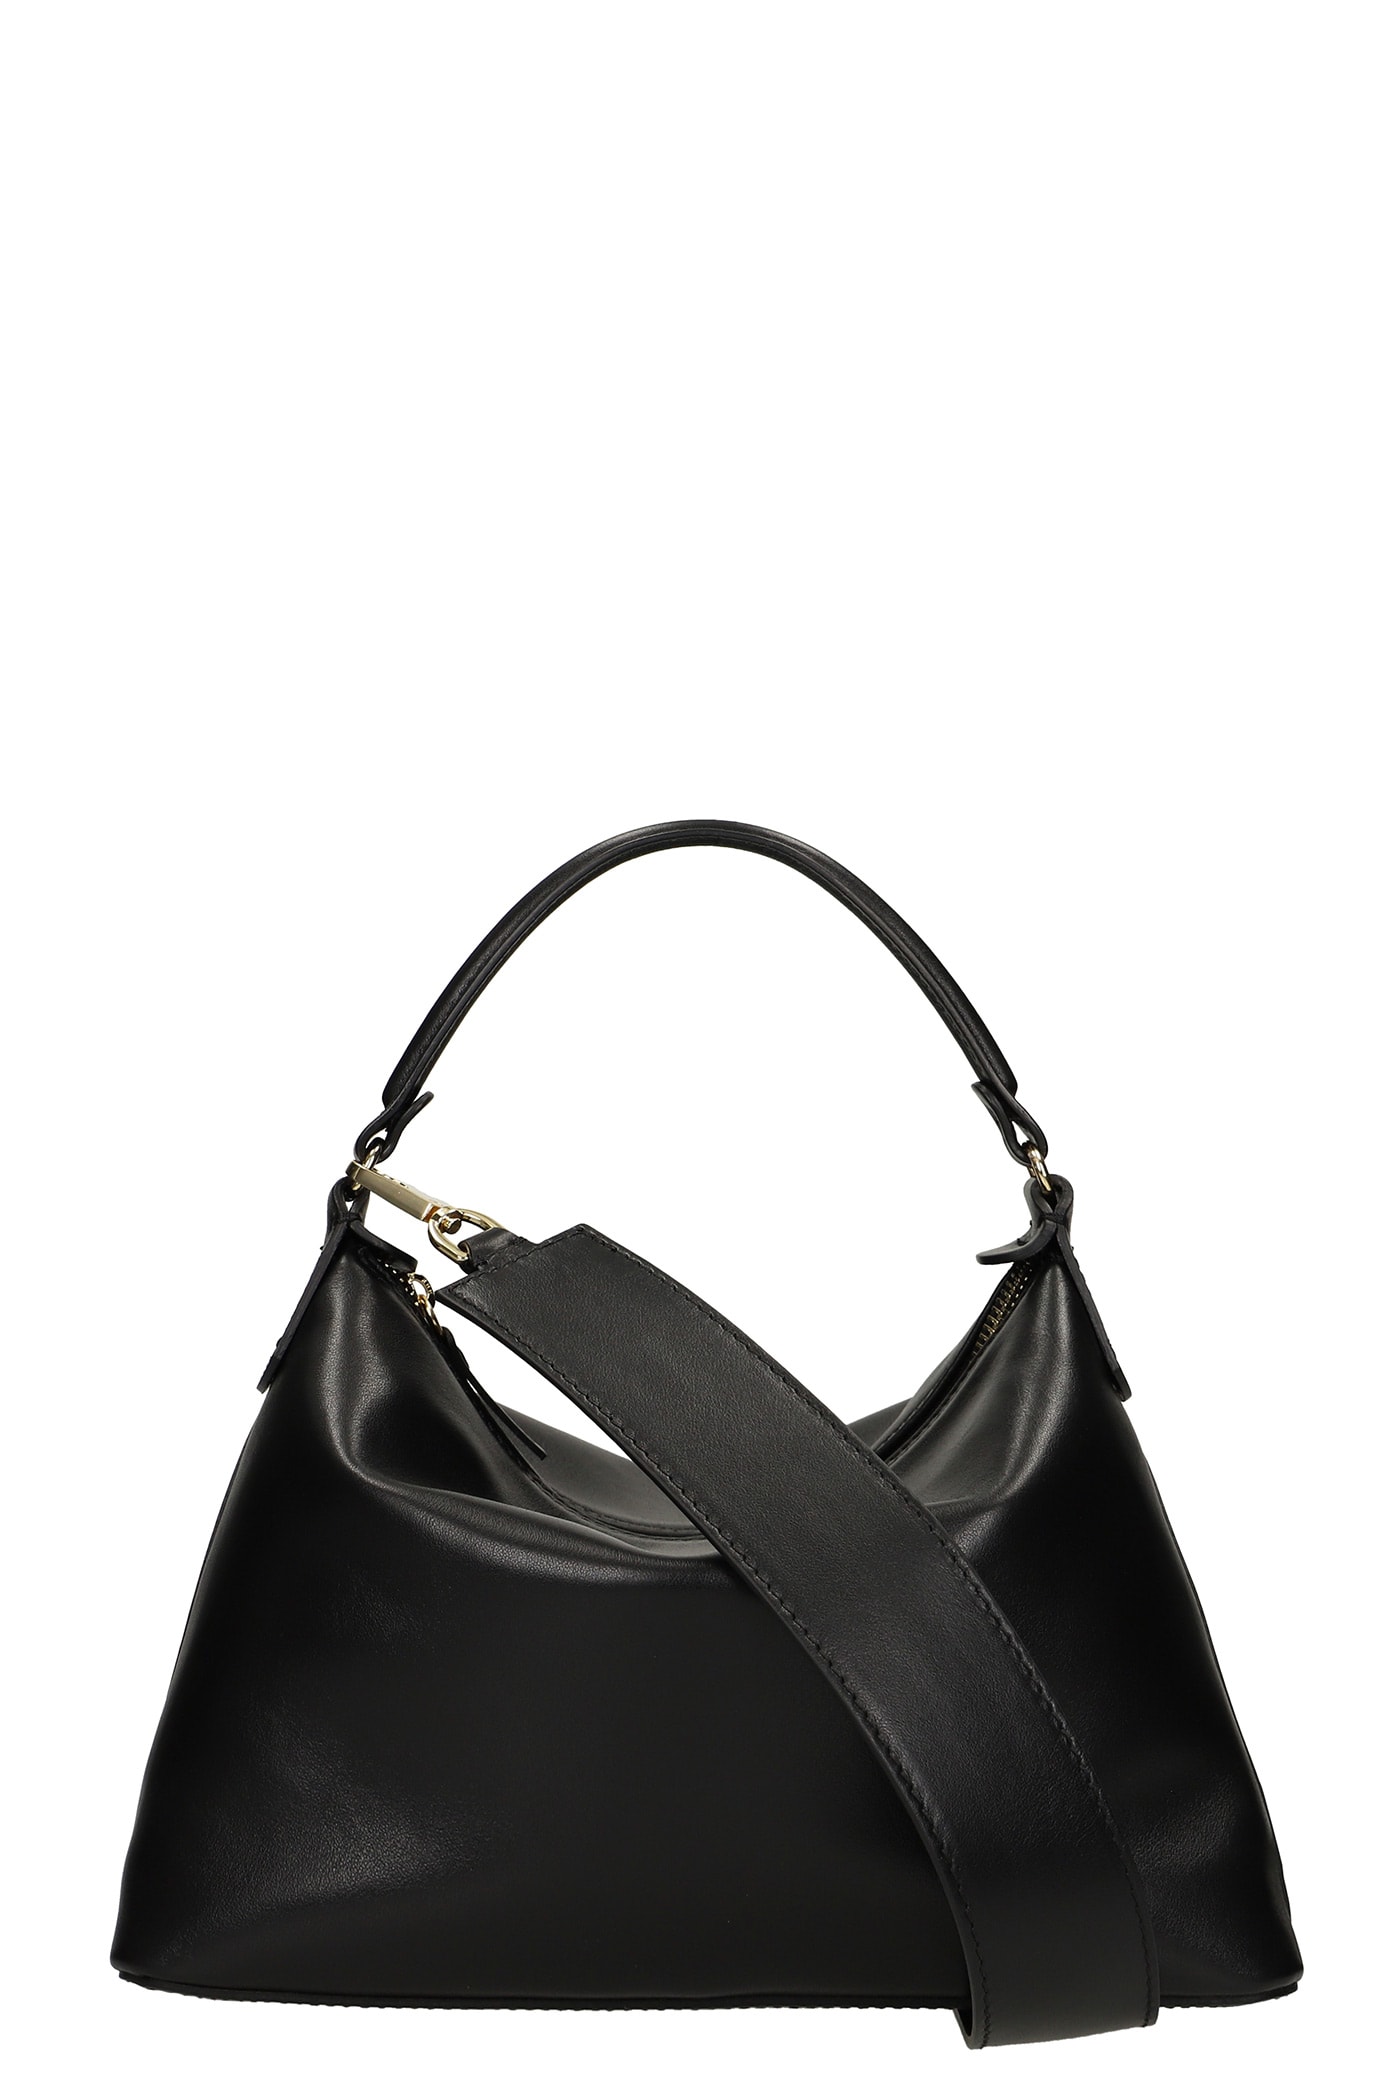 Liu-Jo Hobo Small Shoulder Bag In Black Leather